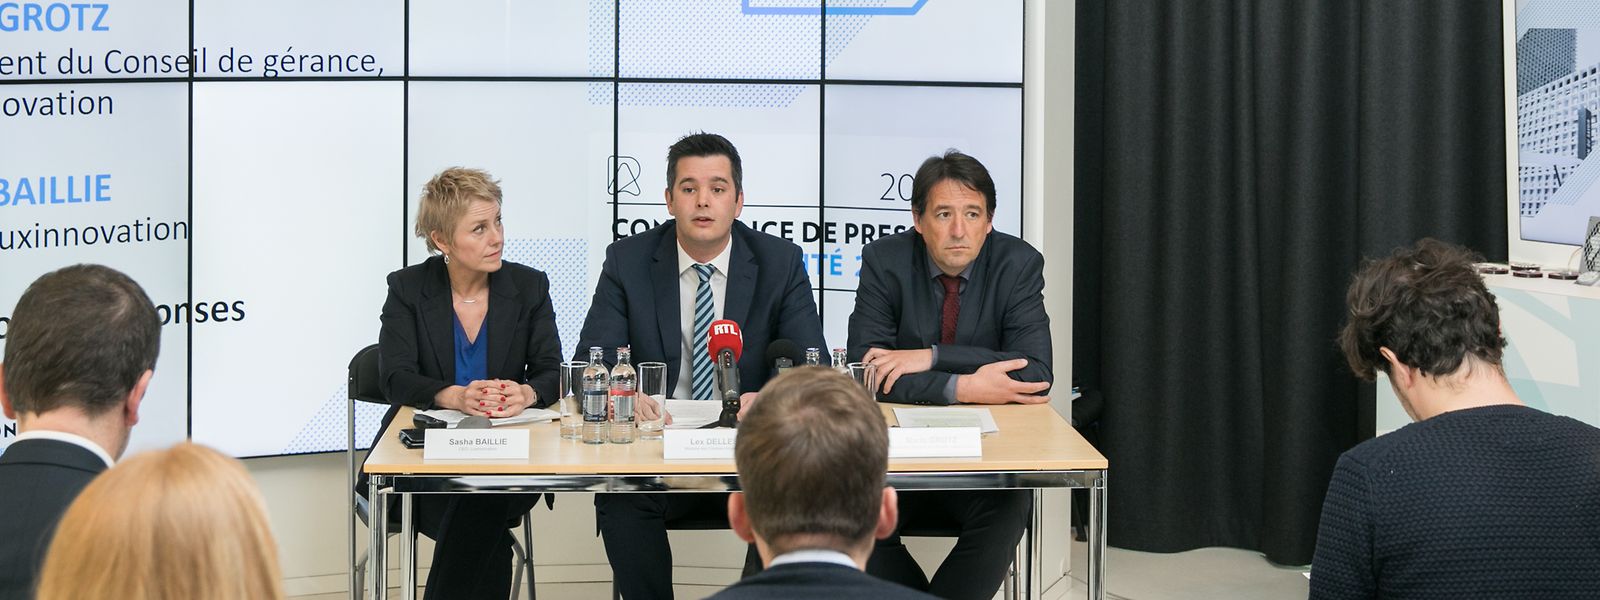 Sasha Baillie, CEO de Luxinnovation, Lex Delles, ministre des Classes moyennes, et Mario Grotz, président de Luxinnovation lors de la présentation du rapport 2018.